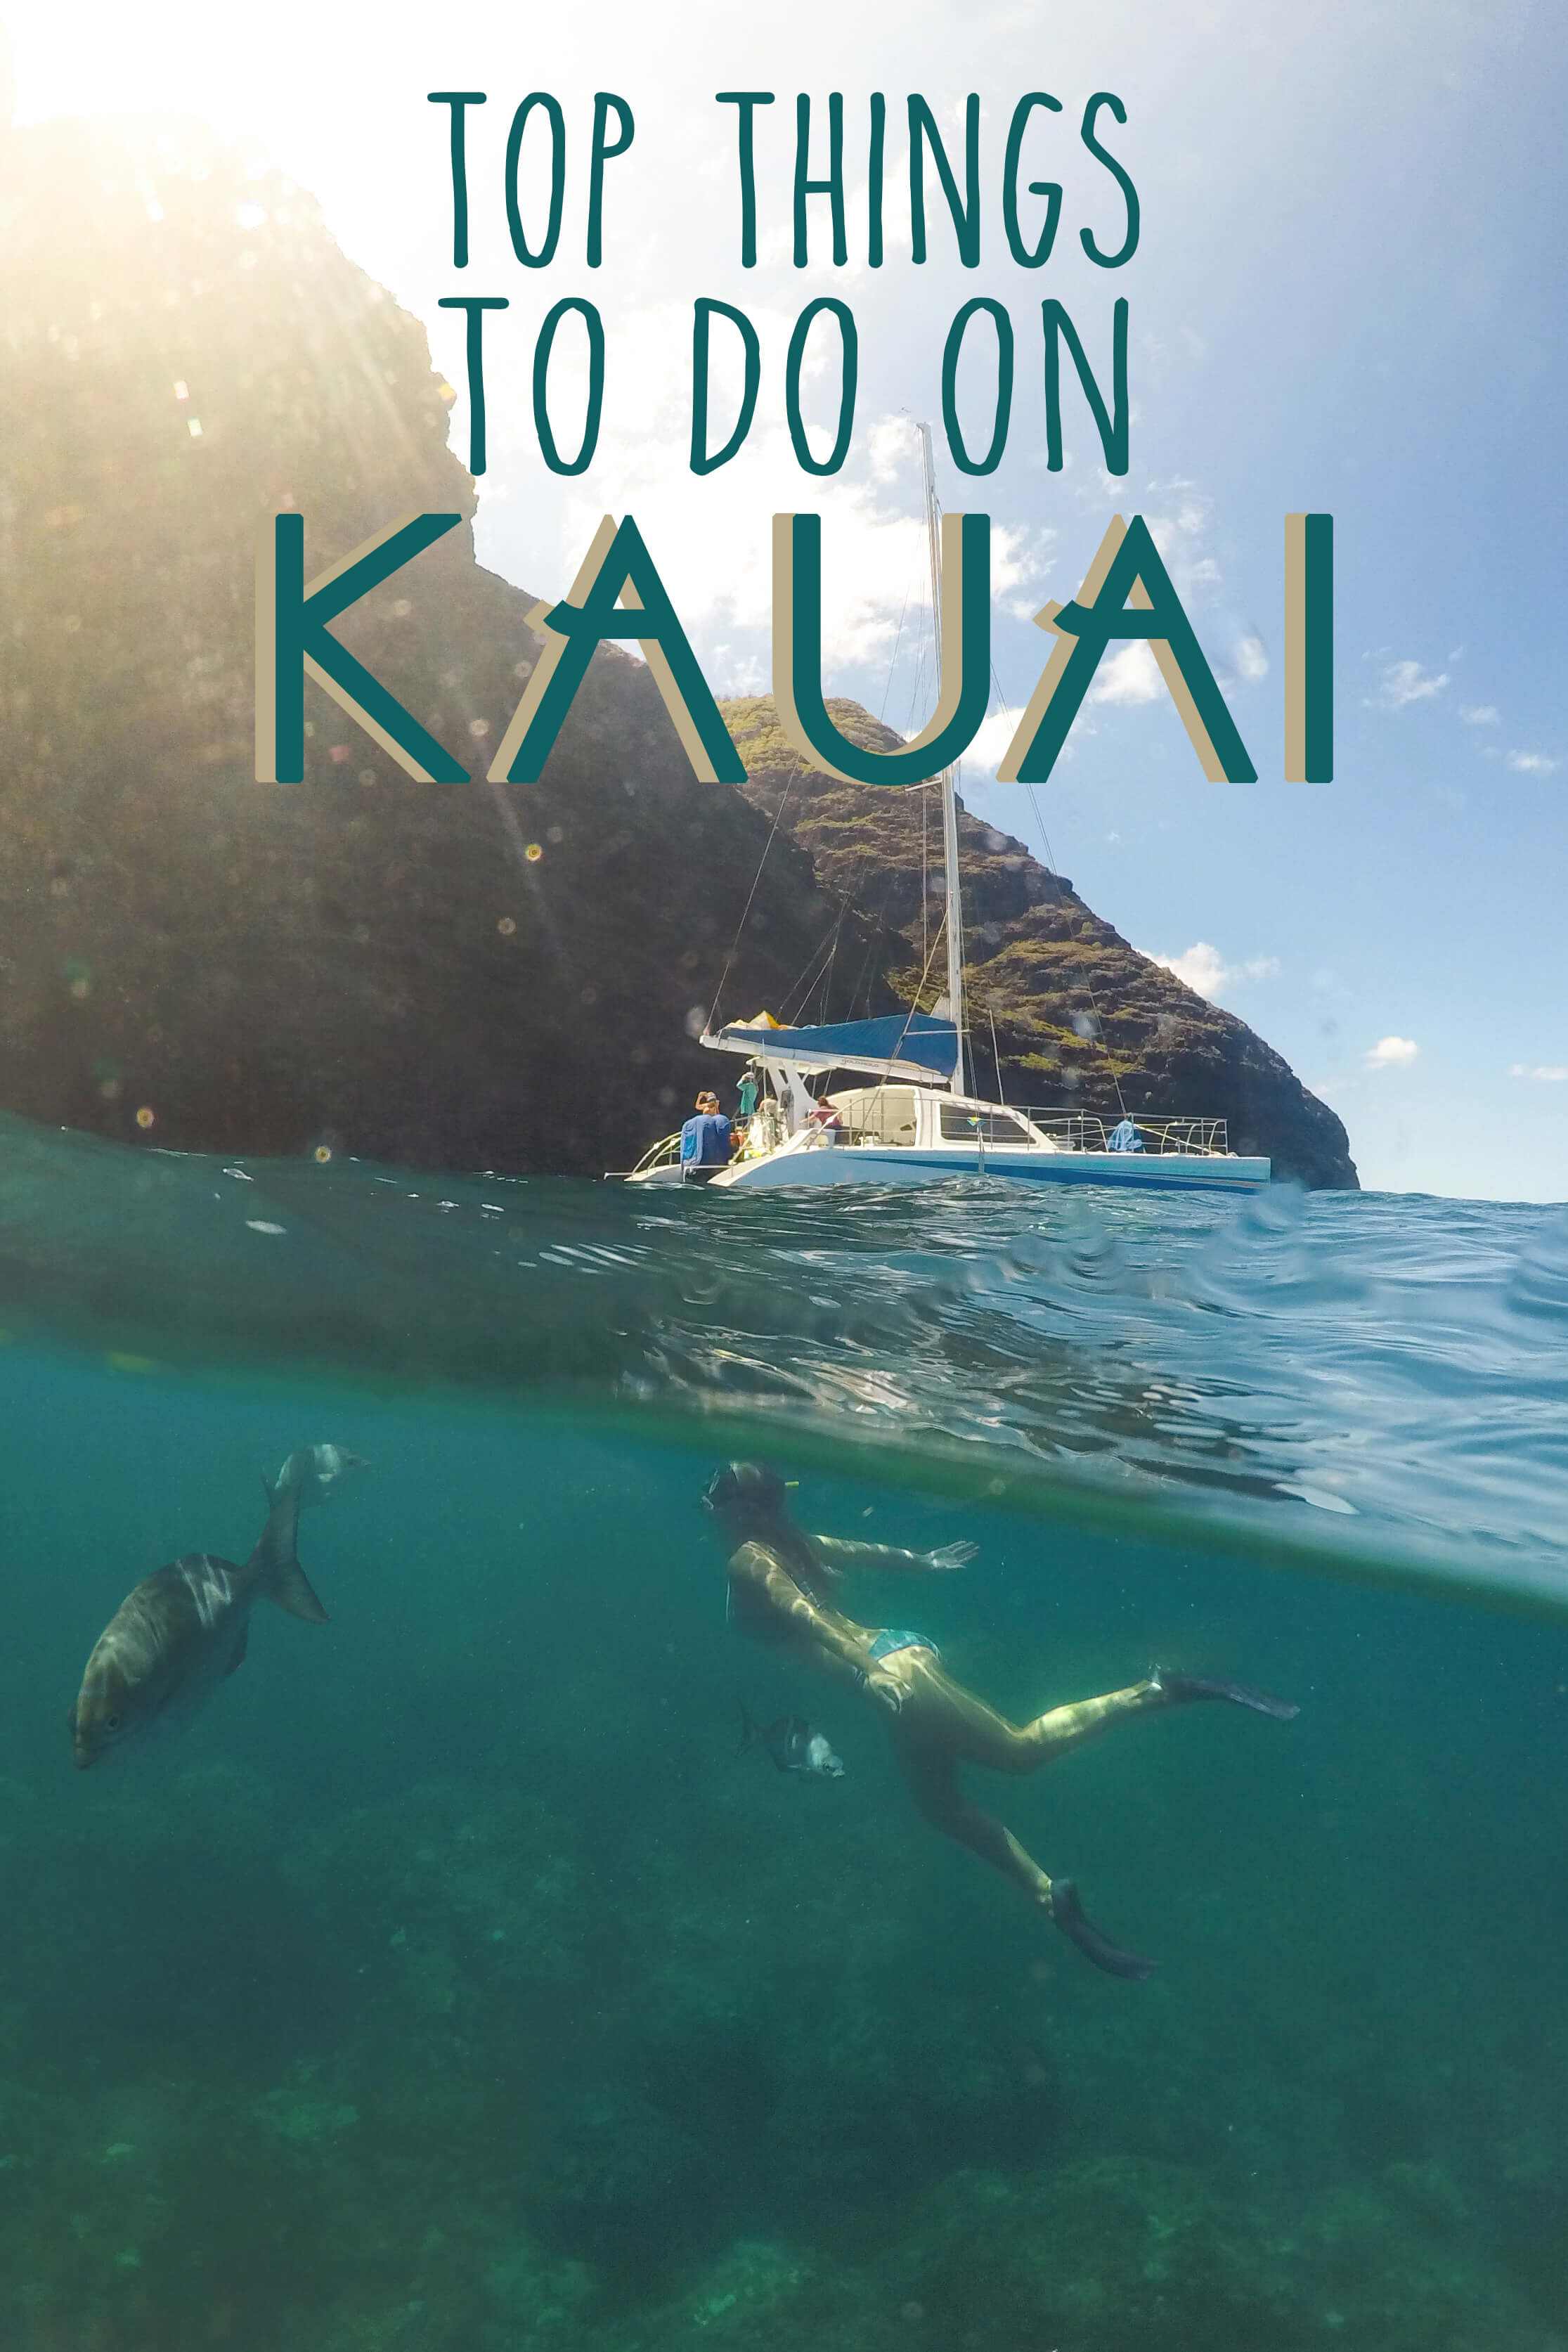 Top Things to do on Kauai